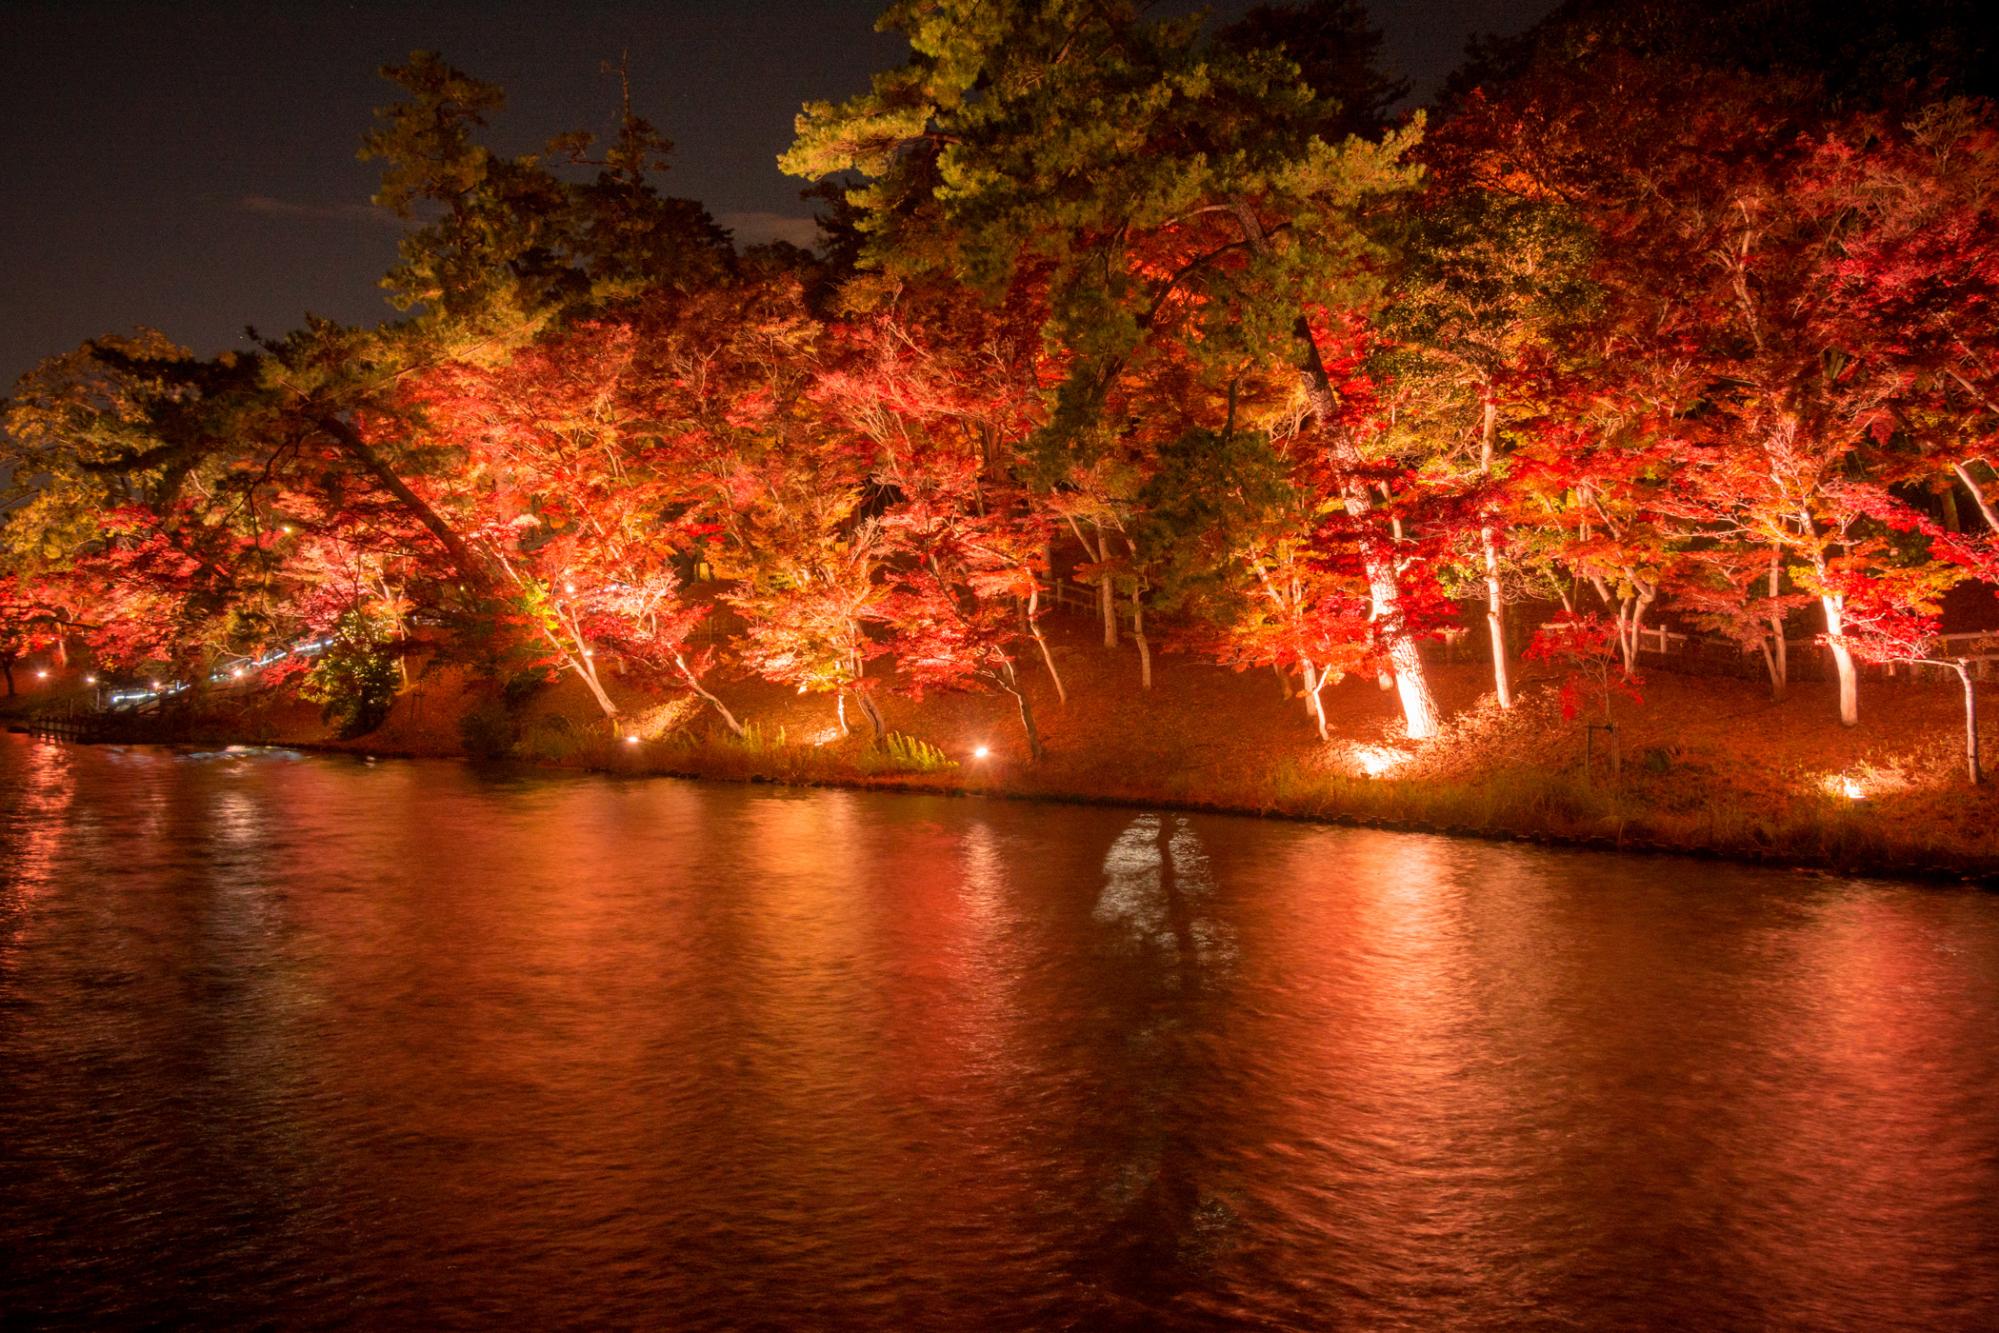 【東公園紅葉まつり】12月5日まで、紅葉を照らす夜間照明をやっています。